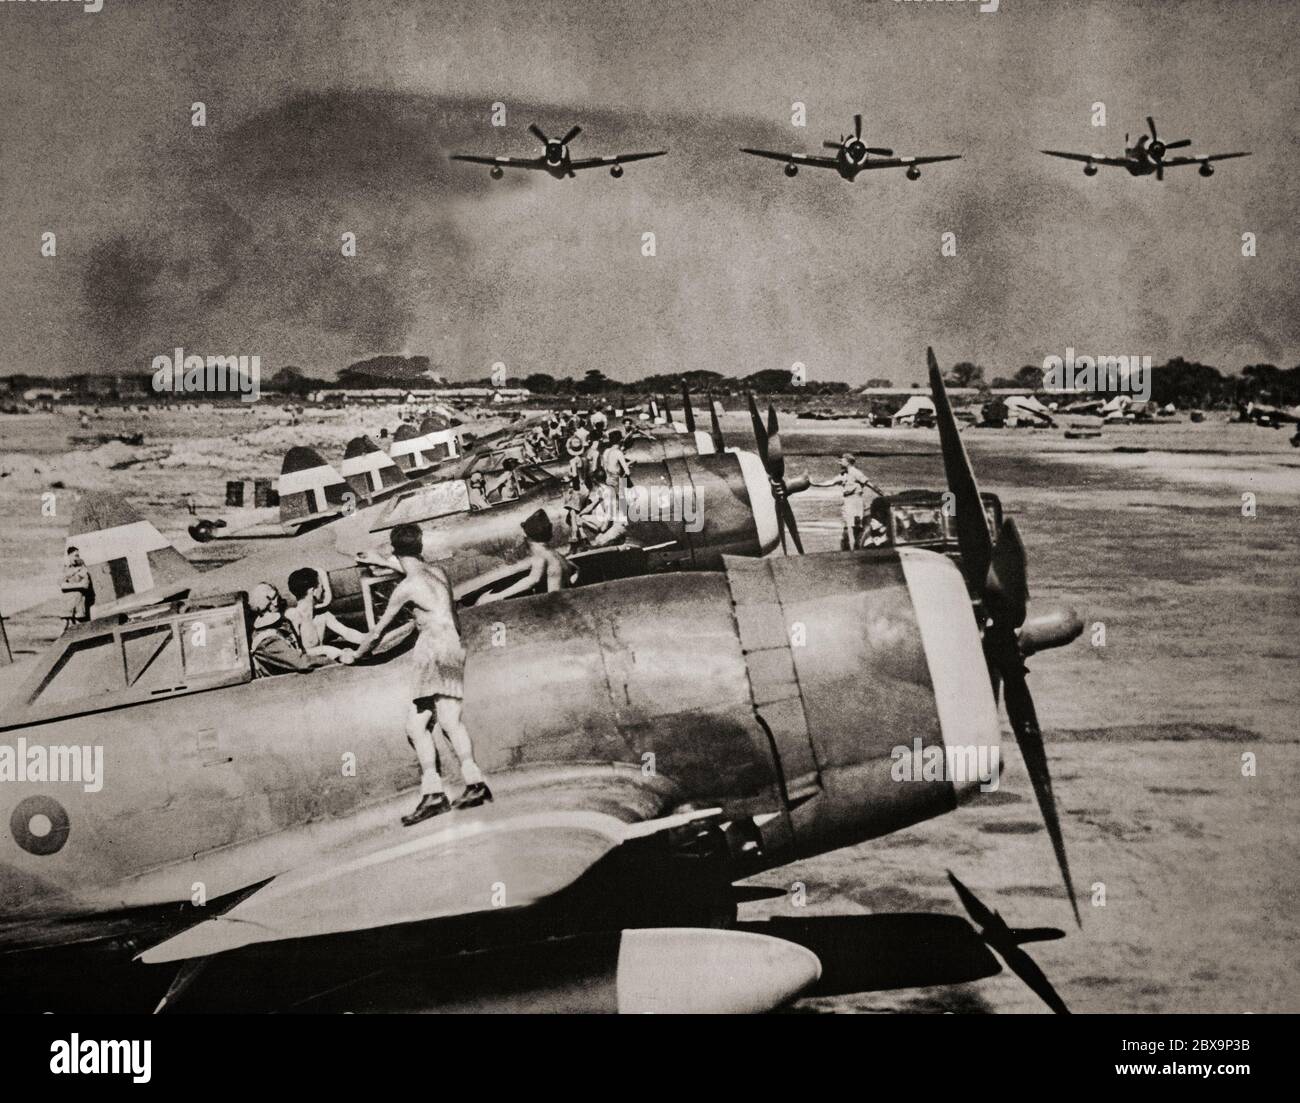 I combattenti Thunderbolt P-47 in una base RAF in Birmania decolgono per far esplodere l'esercito giapponese in ritirata durante la campagna birmana del 1945. Thunderbolt è stato efficace come combattente di scorta di breve e medio raggio in combattimento aereo e attacco a terra ad alta quota sia nei teatri europei che nel Pacifico. Foto Stock